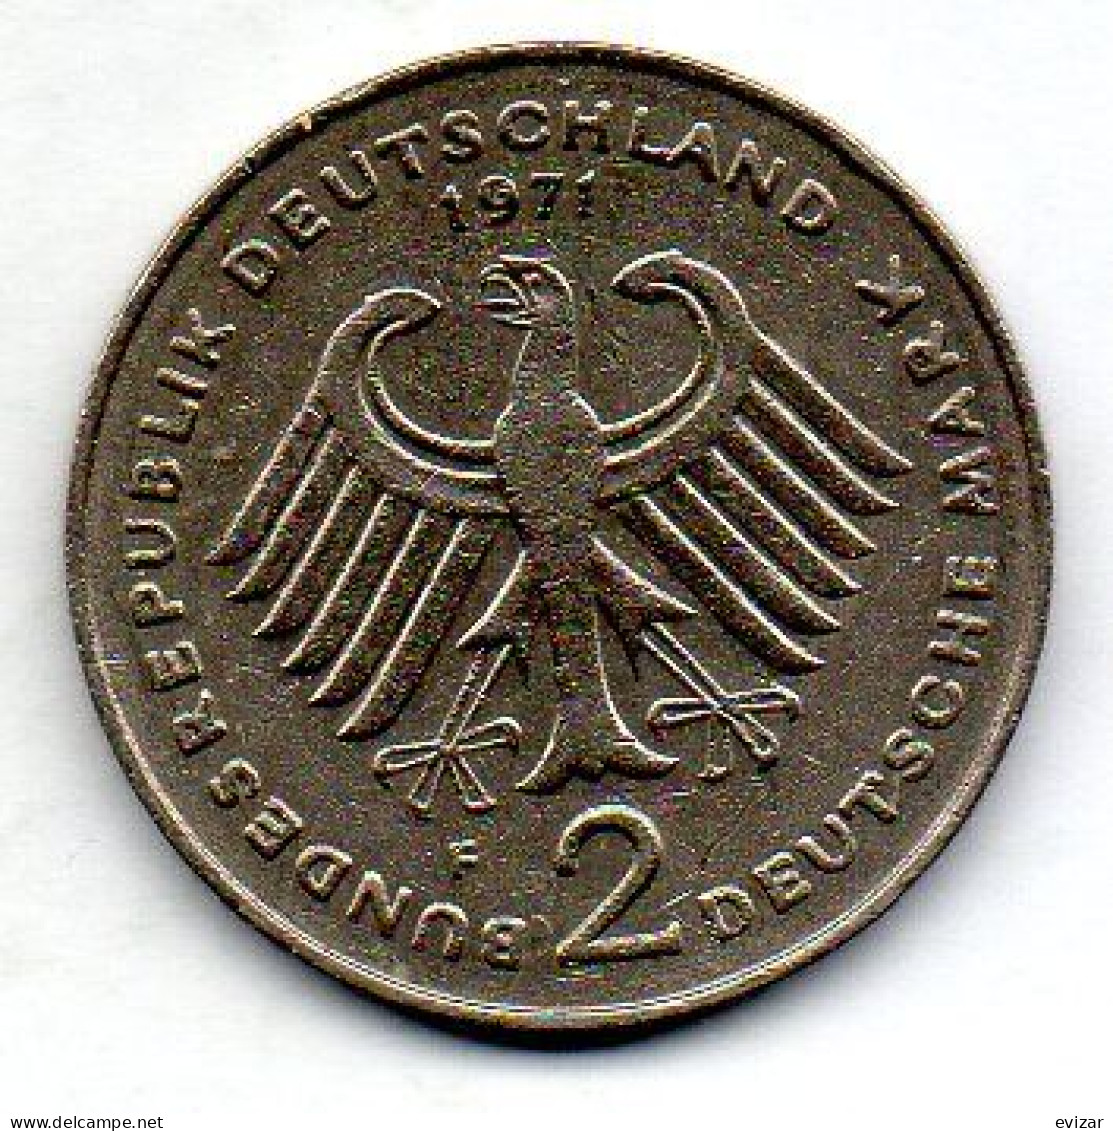 GERMANY - FEDERAL REPUBLIC, 2 Mark, Copper-Nickel, Year 1971-F, KM # 127 - 2 Marchi